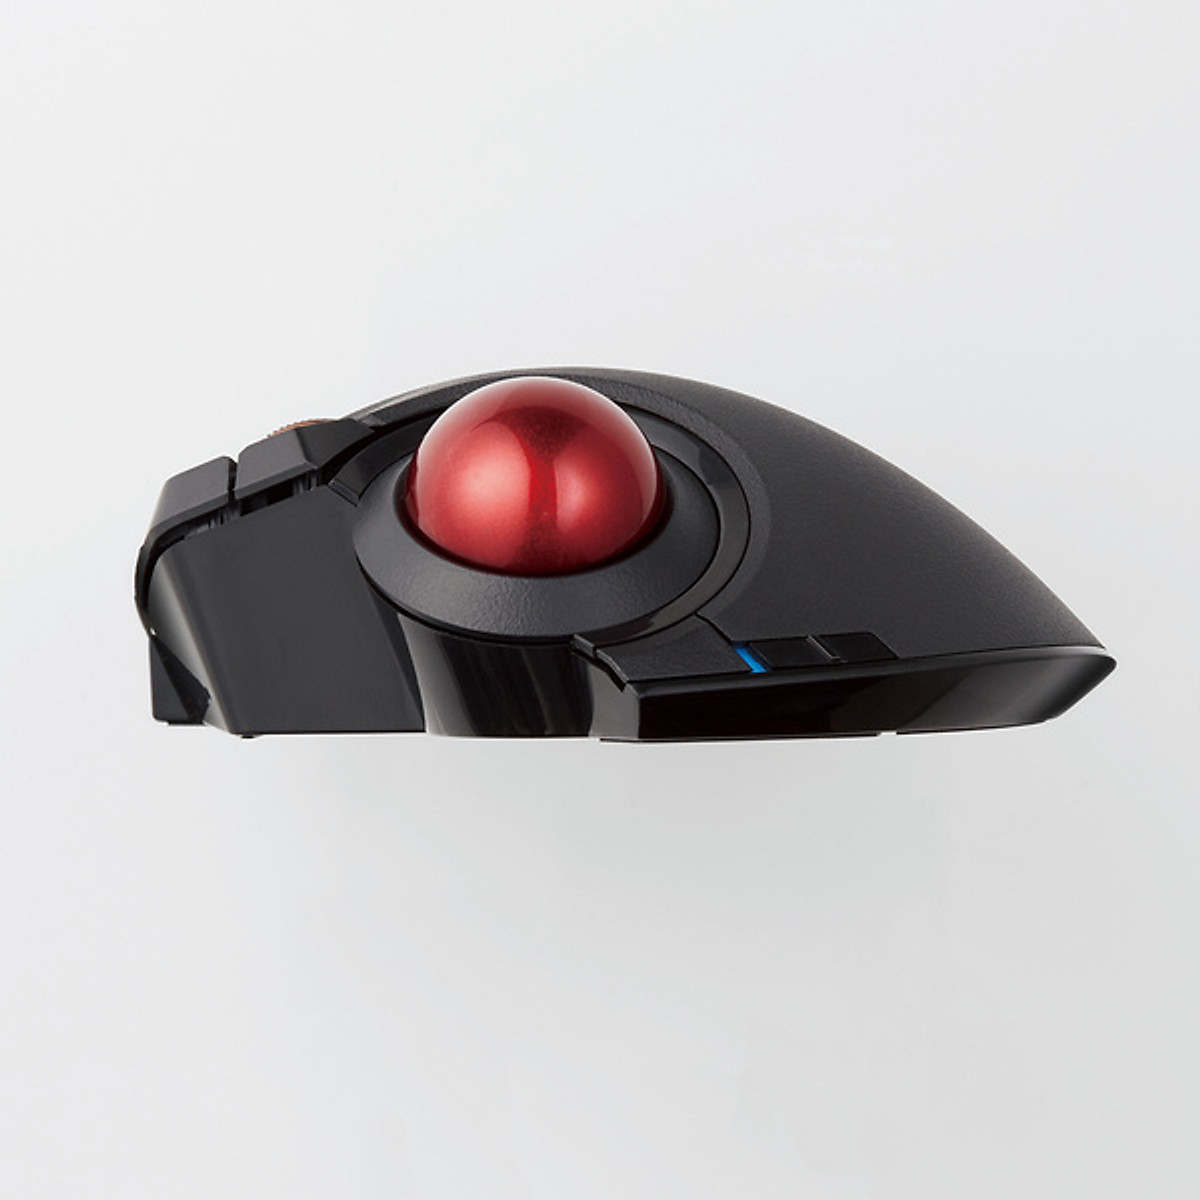 Chuột Trackball bi đỏ không dây, kết nối 3 phương thức ELECOM M-XPT1MRBK - Hàng chính hãng